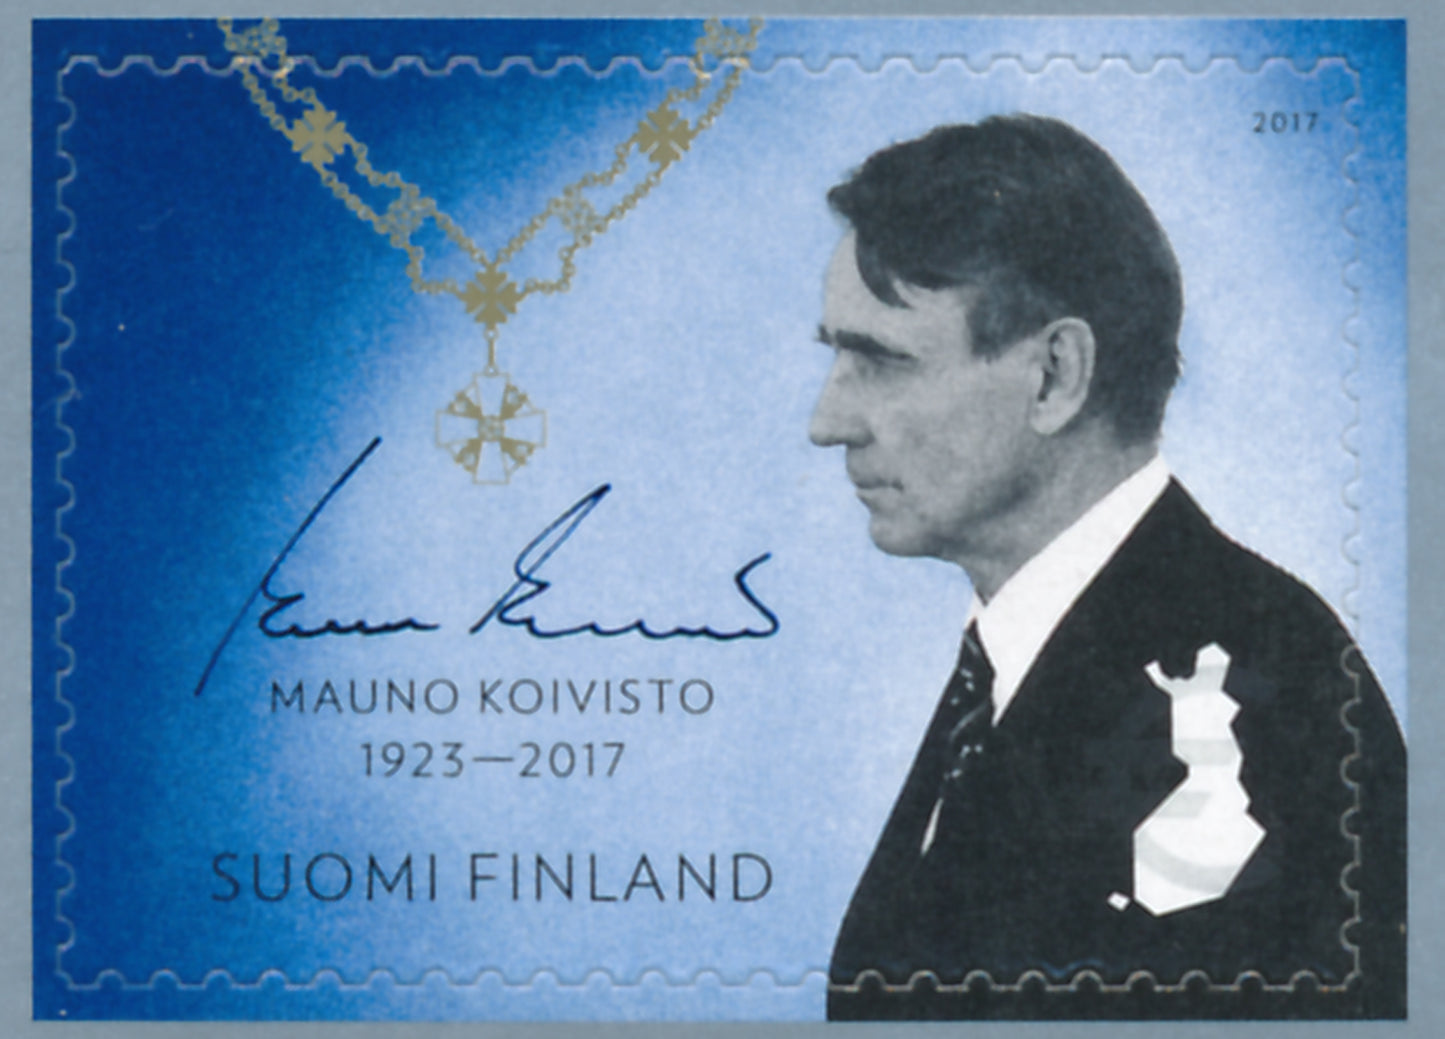 President Mauno Koivisto -cancelled